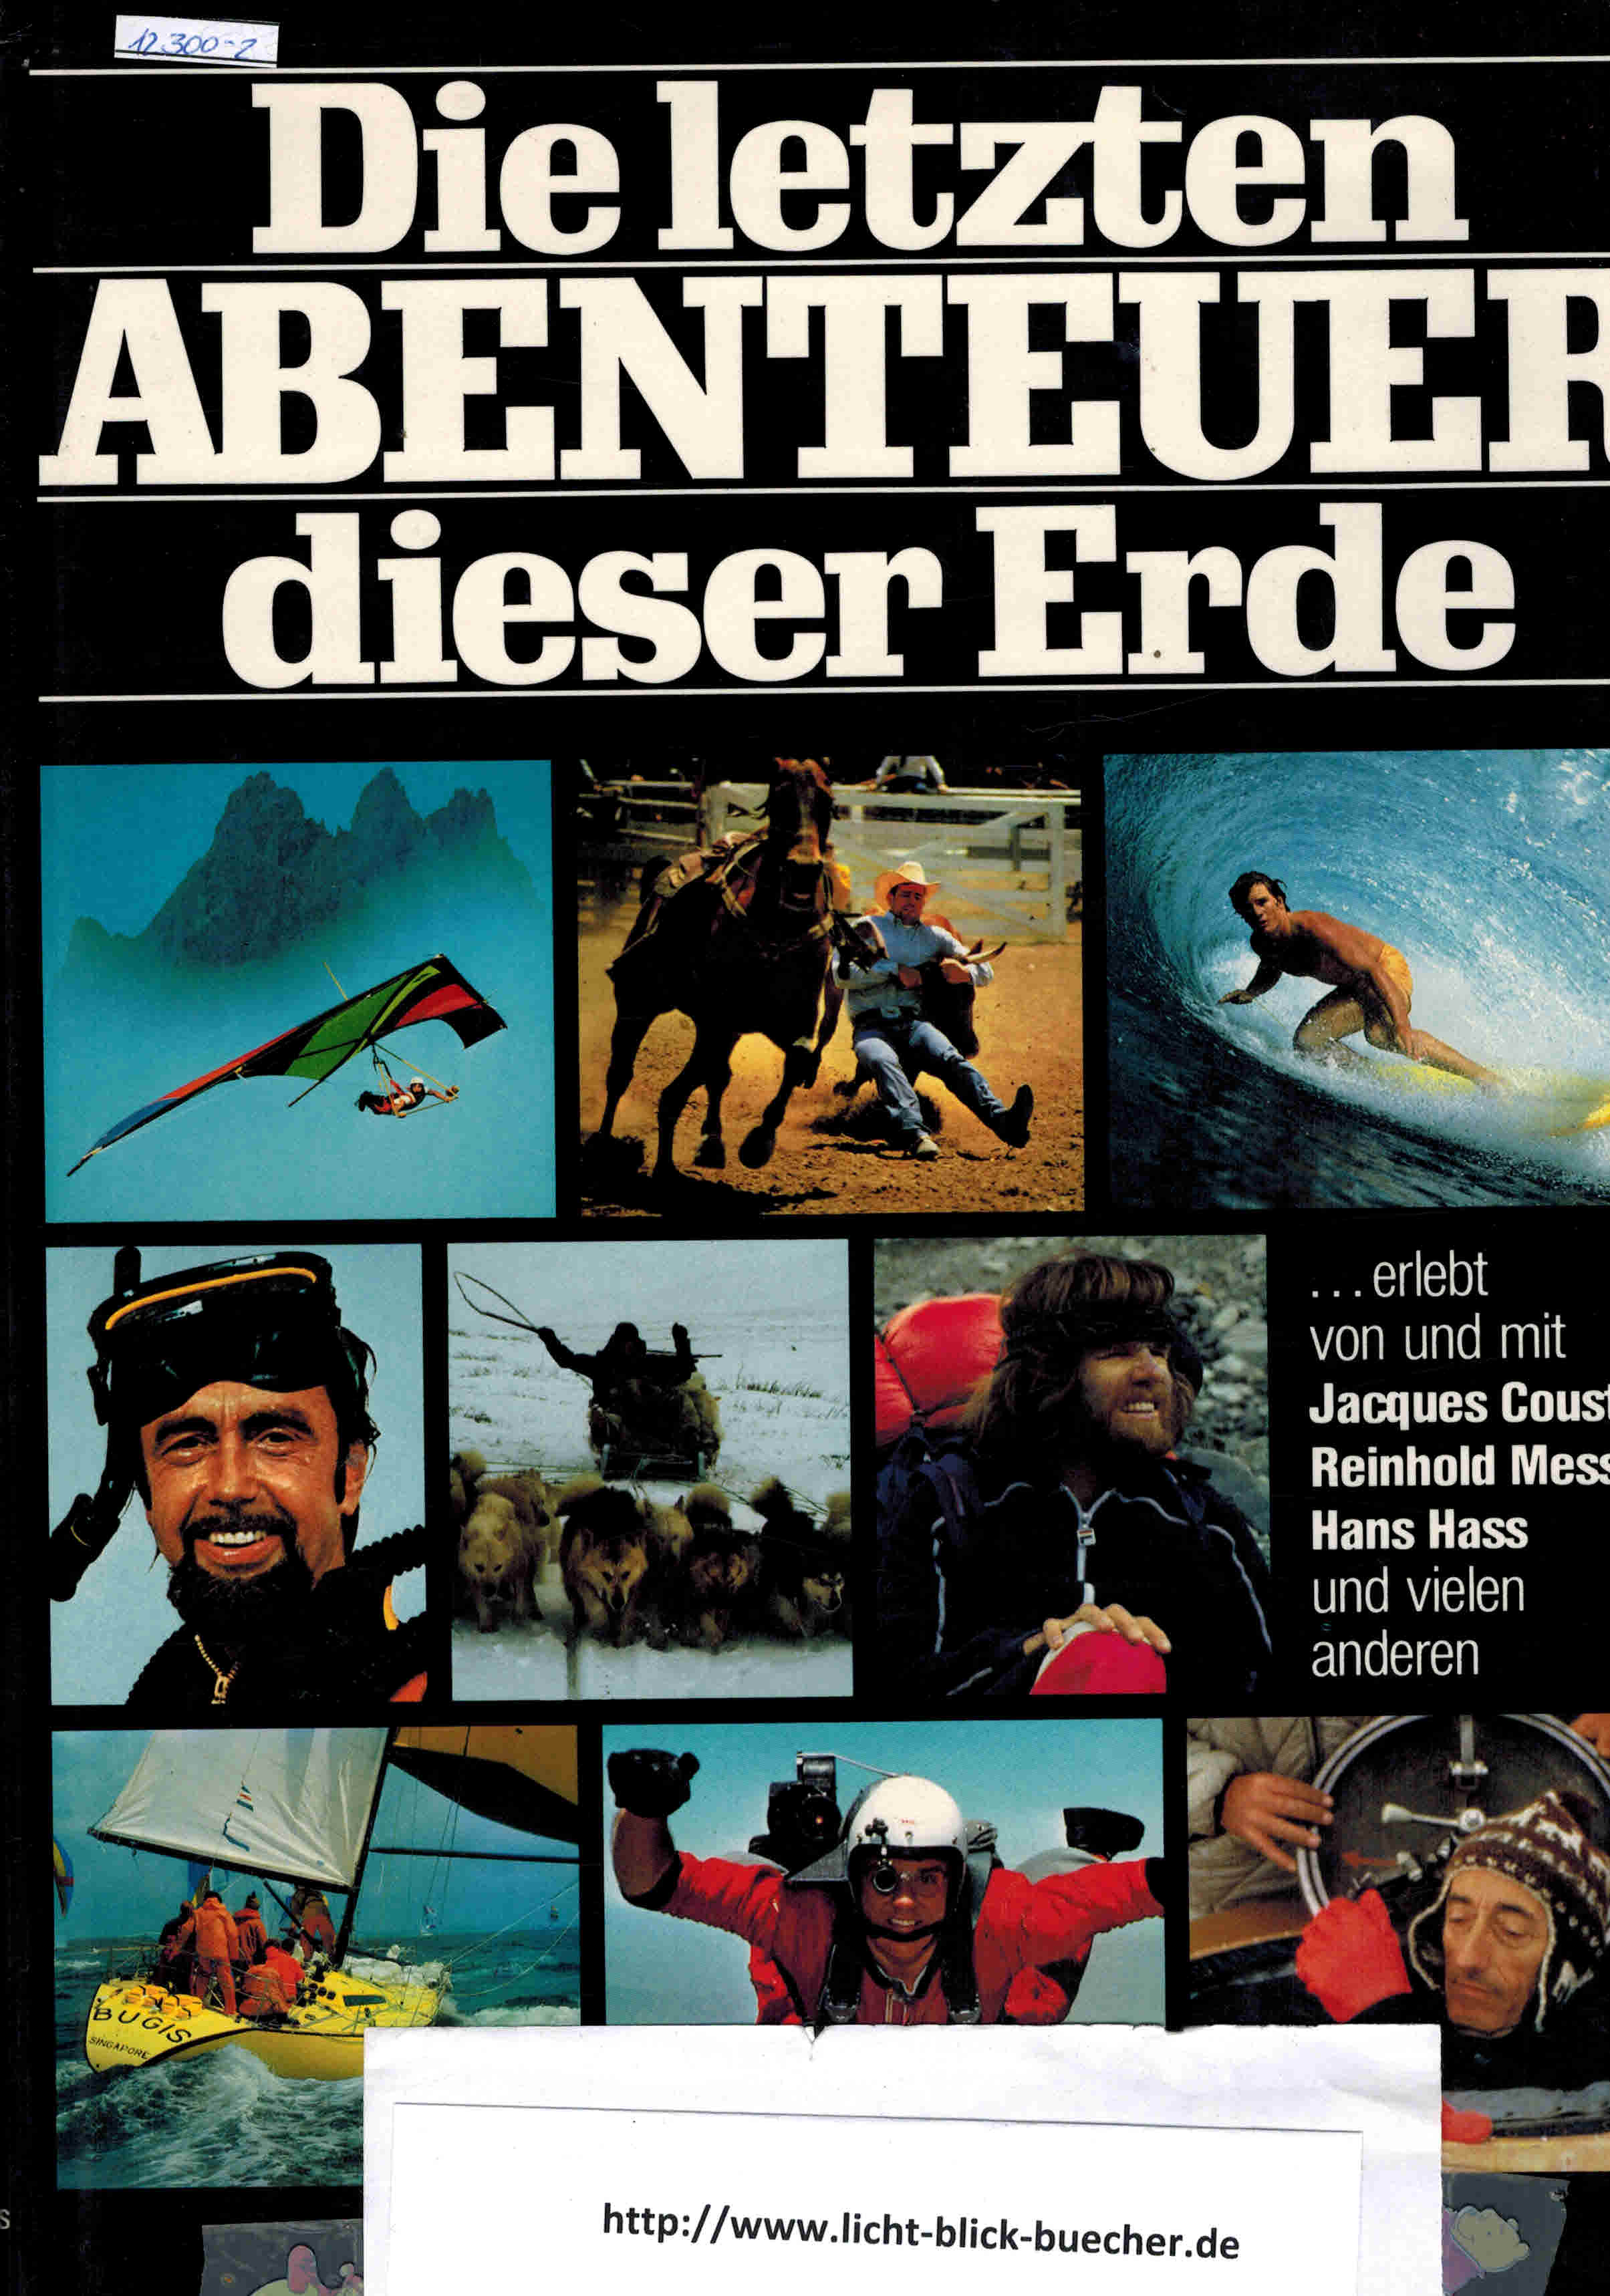 Die letzten Abenteuer dieser Erde erlebt von und mit Jacques Cousteau, Reinhold Messner, Hans Hass u. a.herausgegeben von Kurt Bluechel